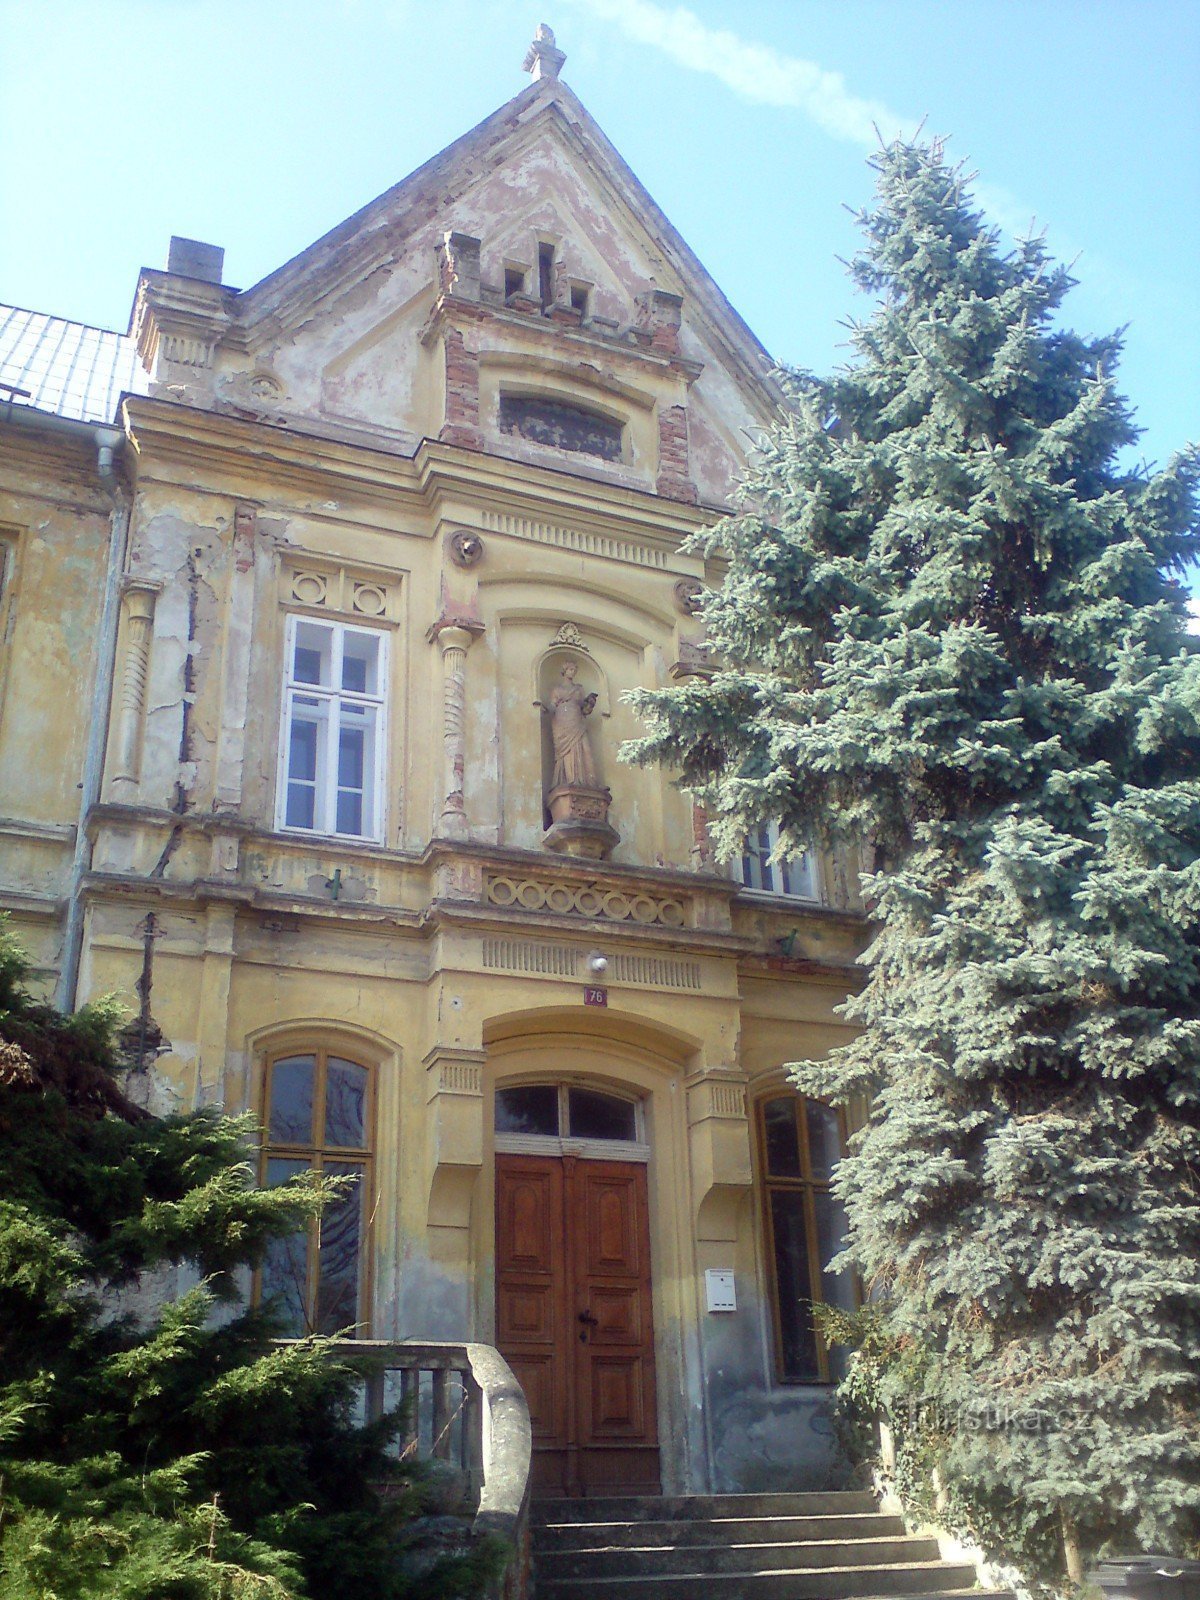 forsiden og hovedindgangen til skolebygningen - en sølvgran til højre pryder trappen, nej